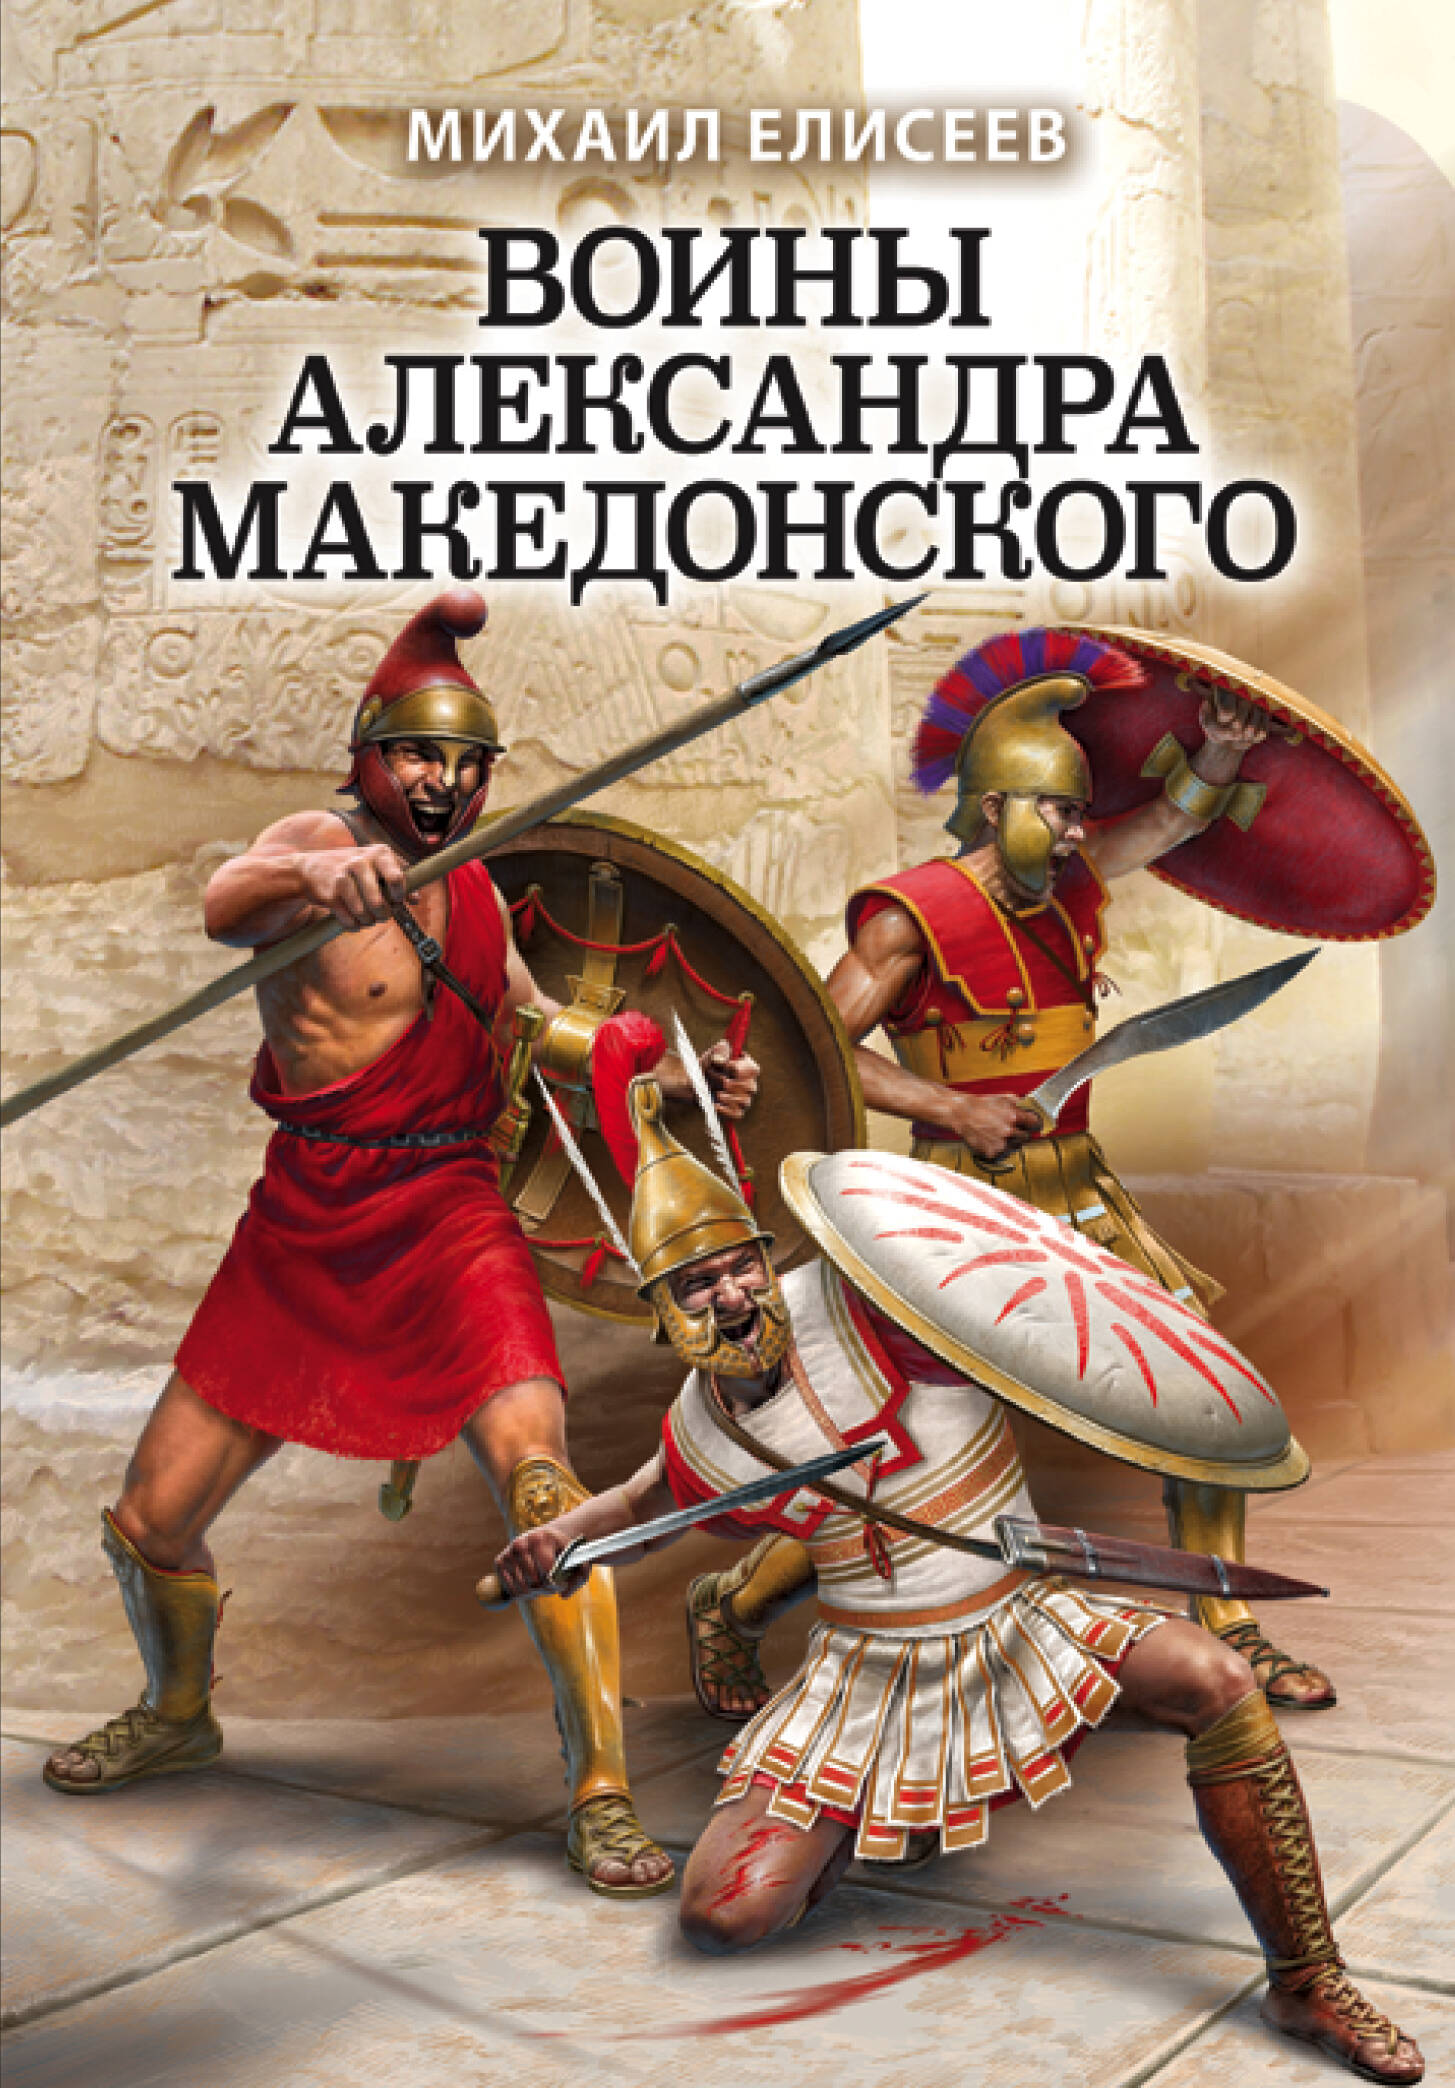 елисеев михаил борисович воины александра македонского Воины Александра Македонского